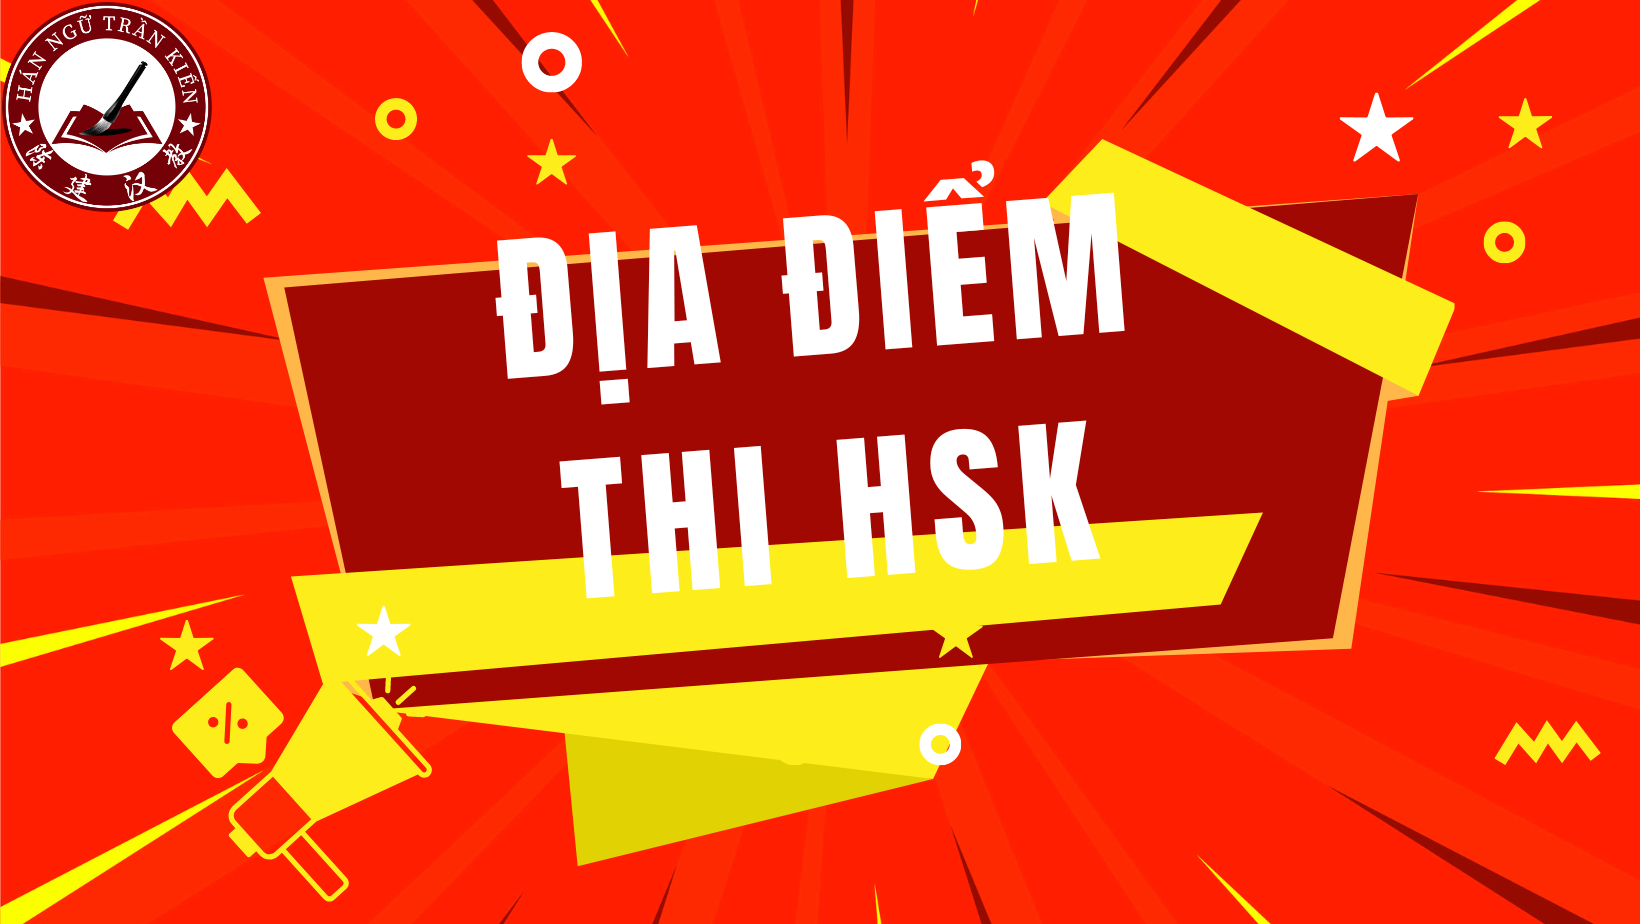 Đăng ký thi HSK trực tuyến - Đừng bỏ lỡ cơ hội đăng ký thi HSK trực tuyến chỉ với vài thao tác đơn giản và tiện lợi! Không cần phải tốn thời gian di chuyển, bạn có thể đăng ký và thanh toán ngay trên website của chúng tôi. Hãy để chúng tôi mang đến cho bạn sự thuận tiện nhất!